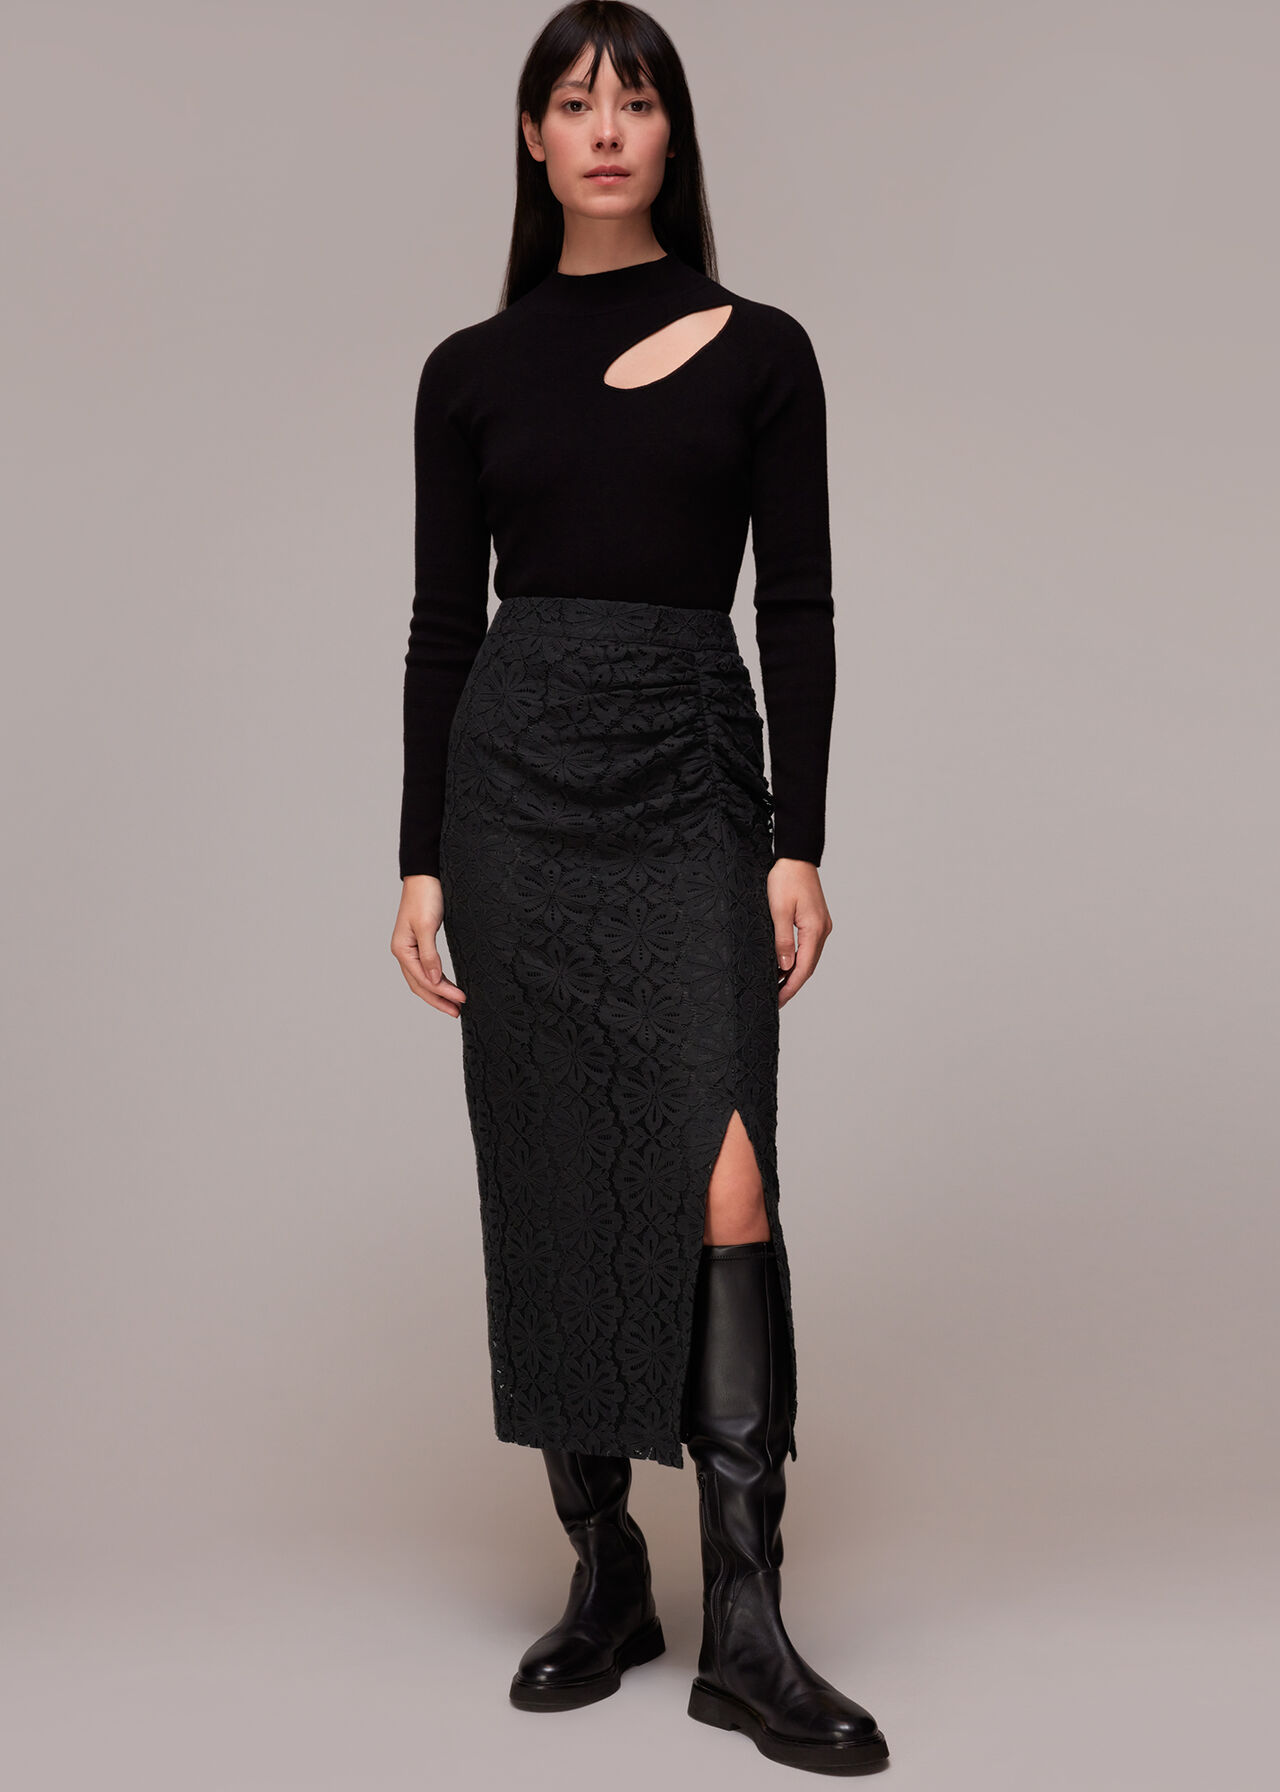 Black Lace Column Skirt | WHISTLES | Whistles UK